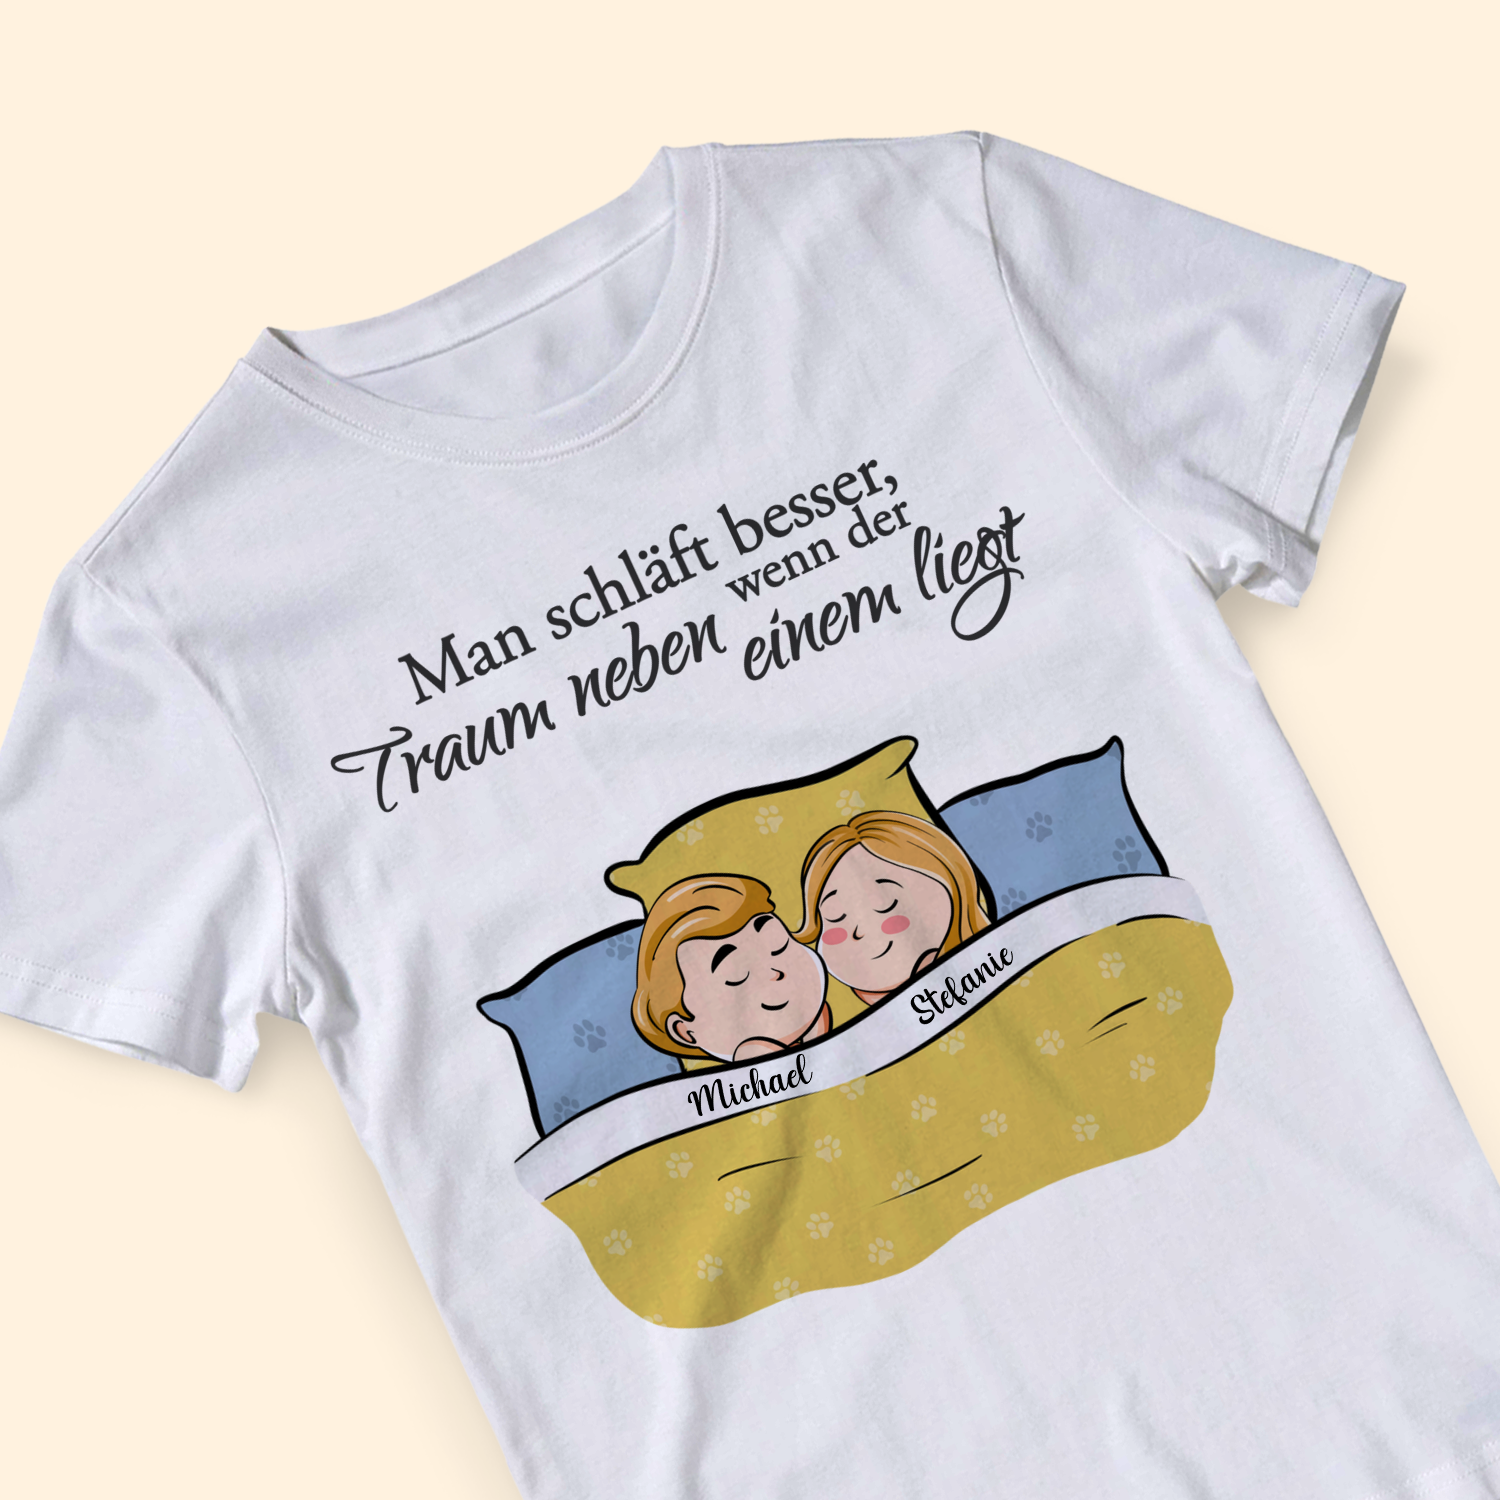 Man schläft besser, wenn der Traum neben einem liegt - Personalisiertes T-Shirt